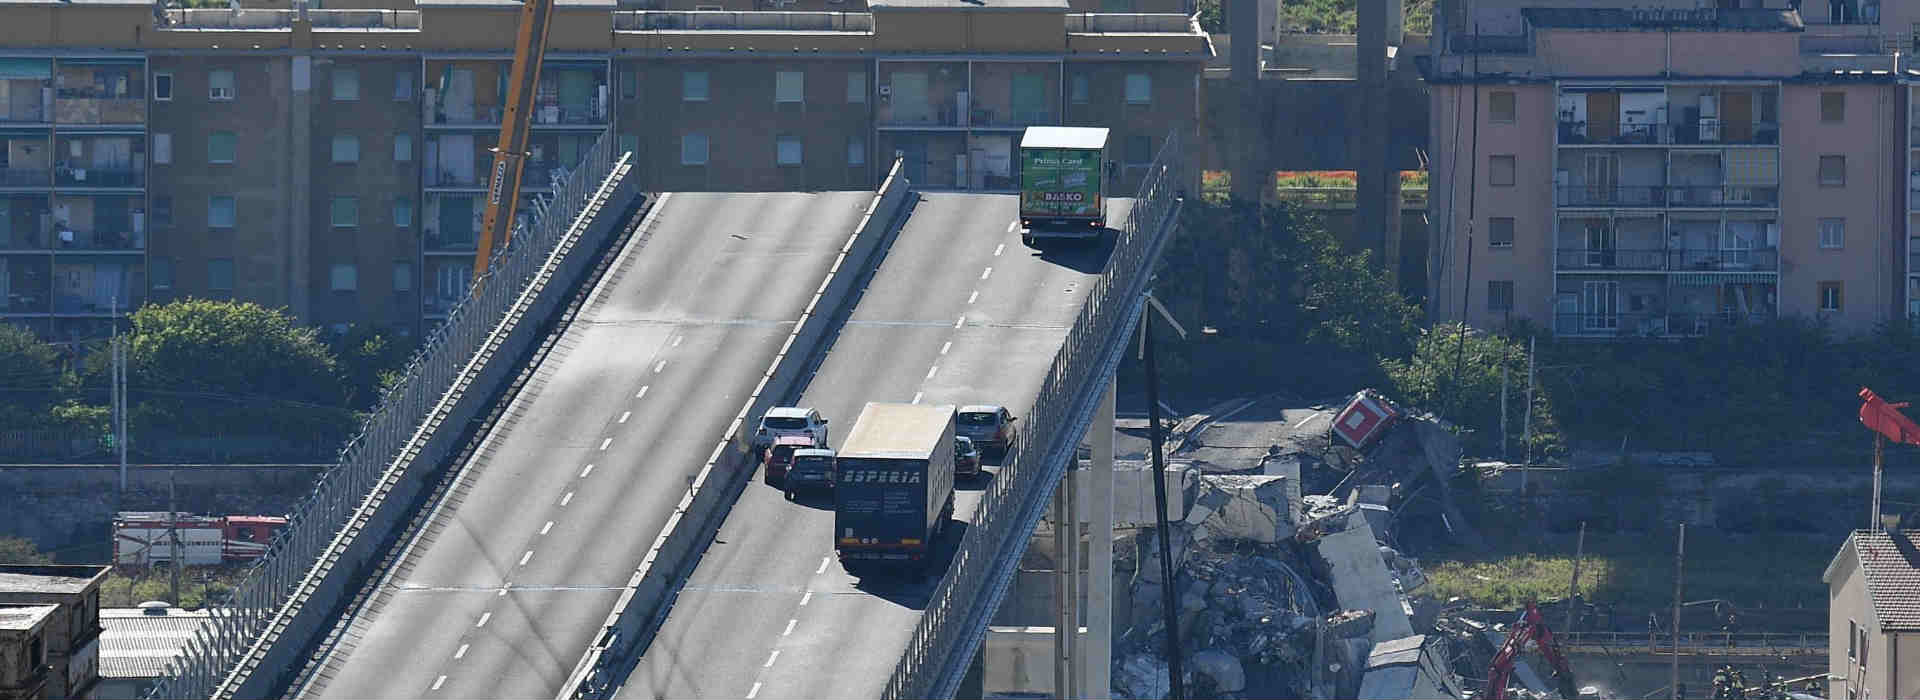 PonteMorandi, Genova. Autostrade parte con gli interventi (500mln) per salvare le concessioni